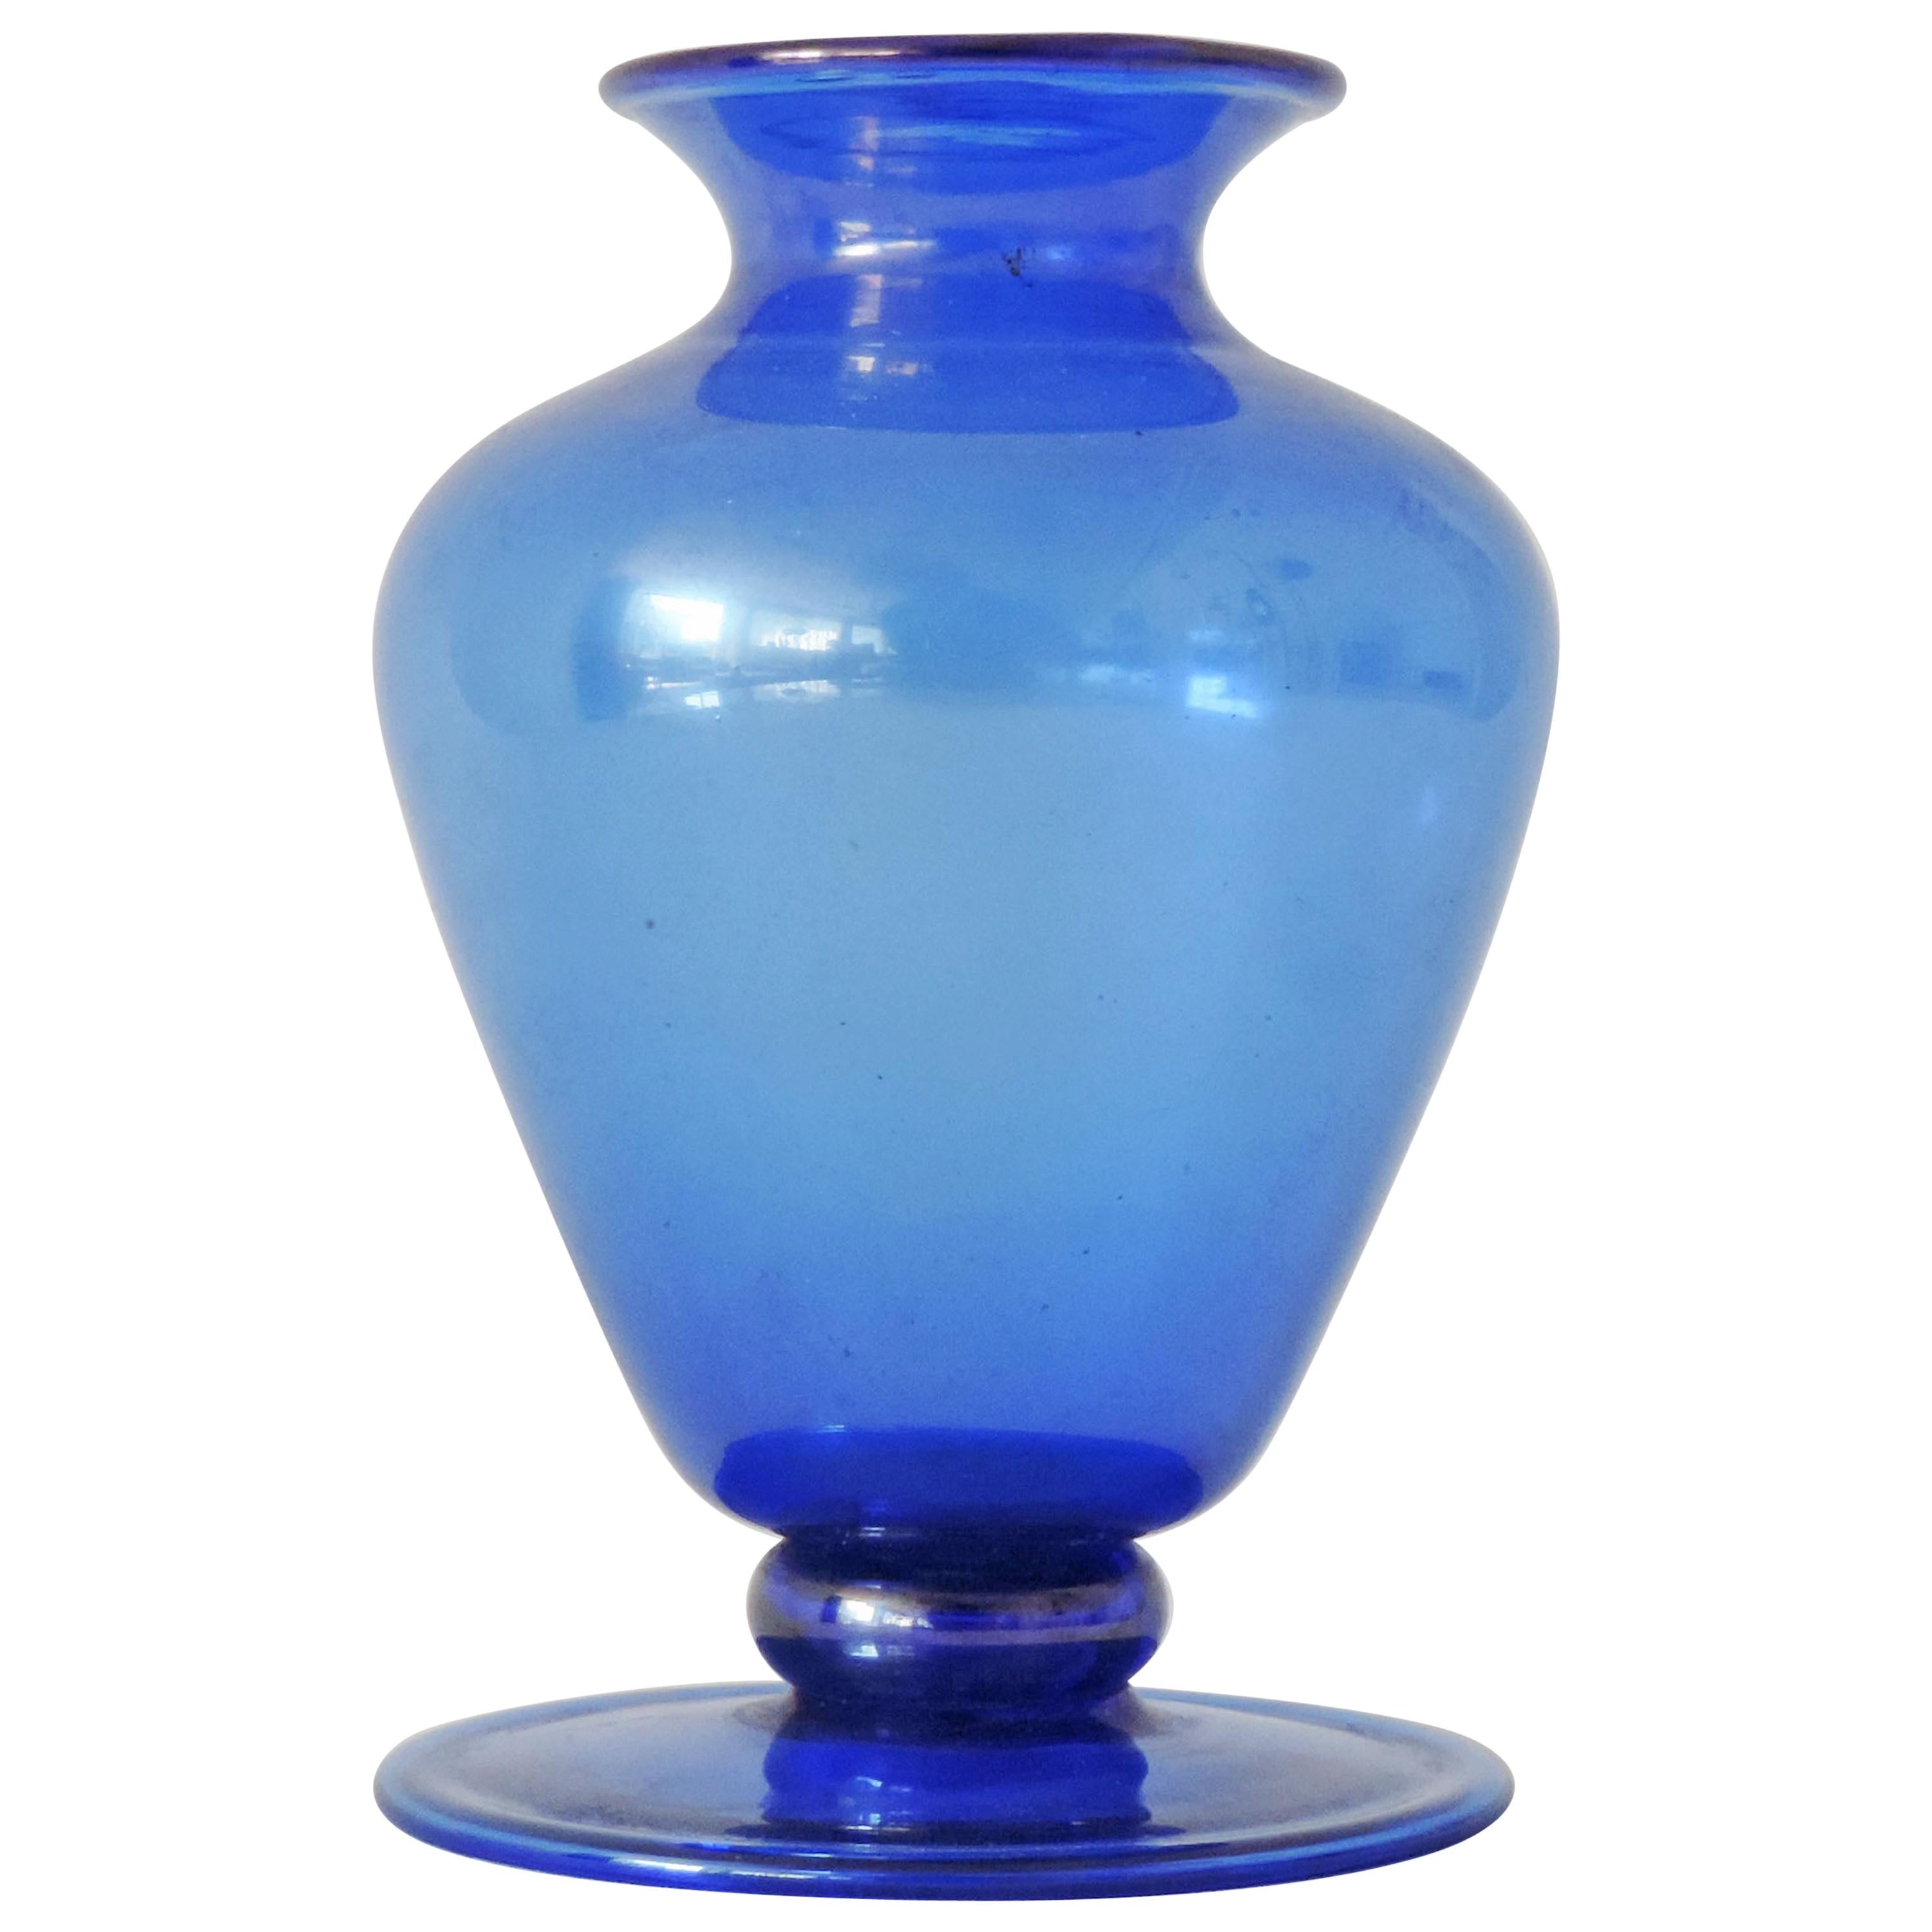 M.V.M Cappellin Murano Glass Vase Model No. 5383 in Blue, Italy, 1920s